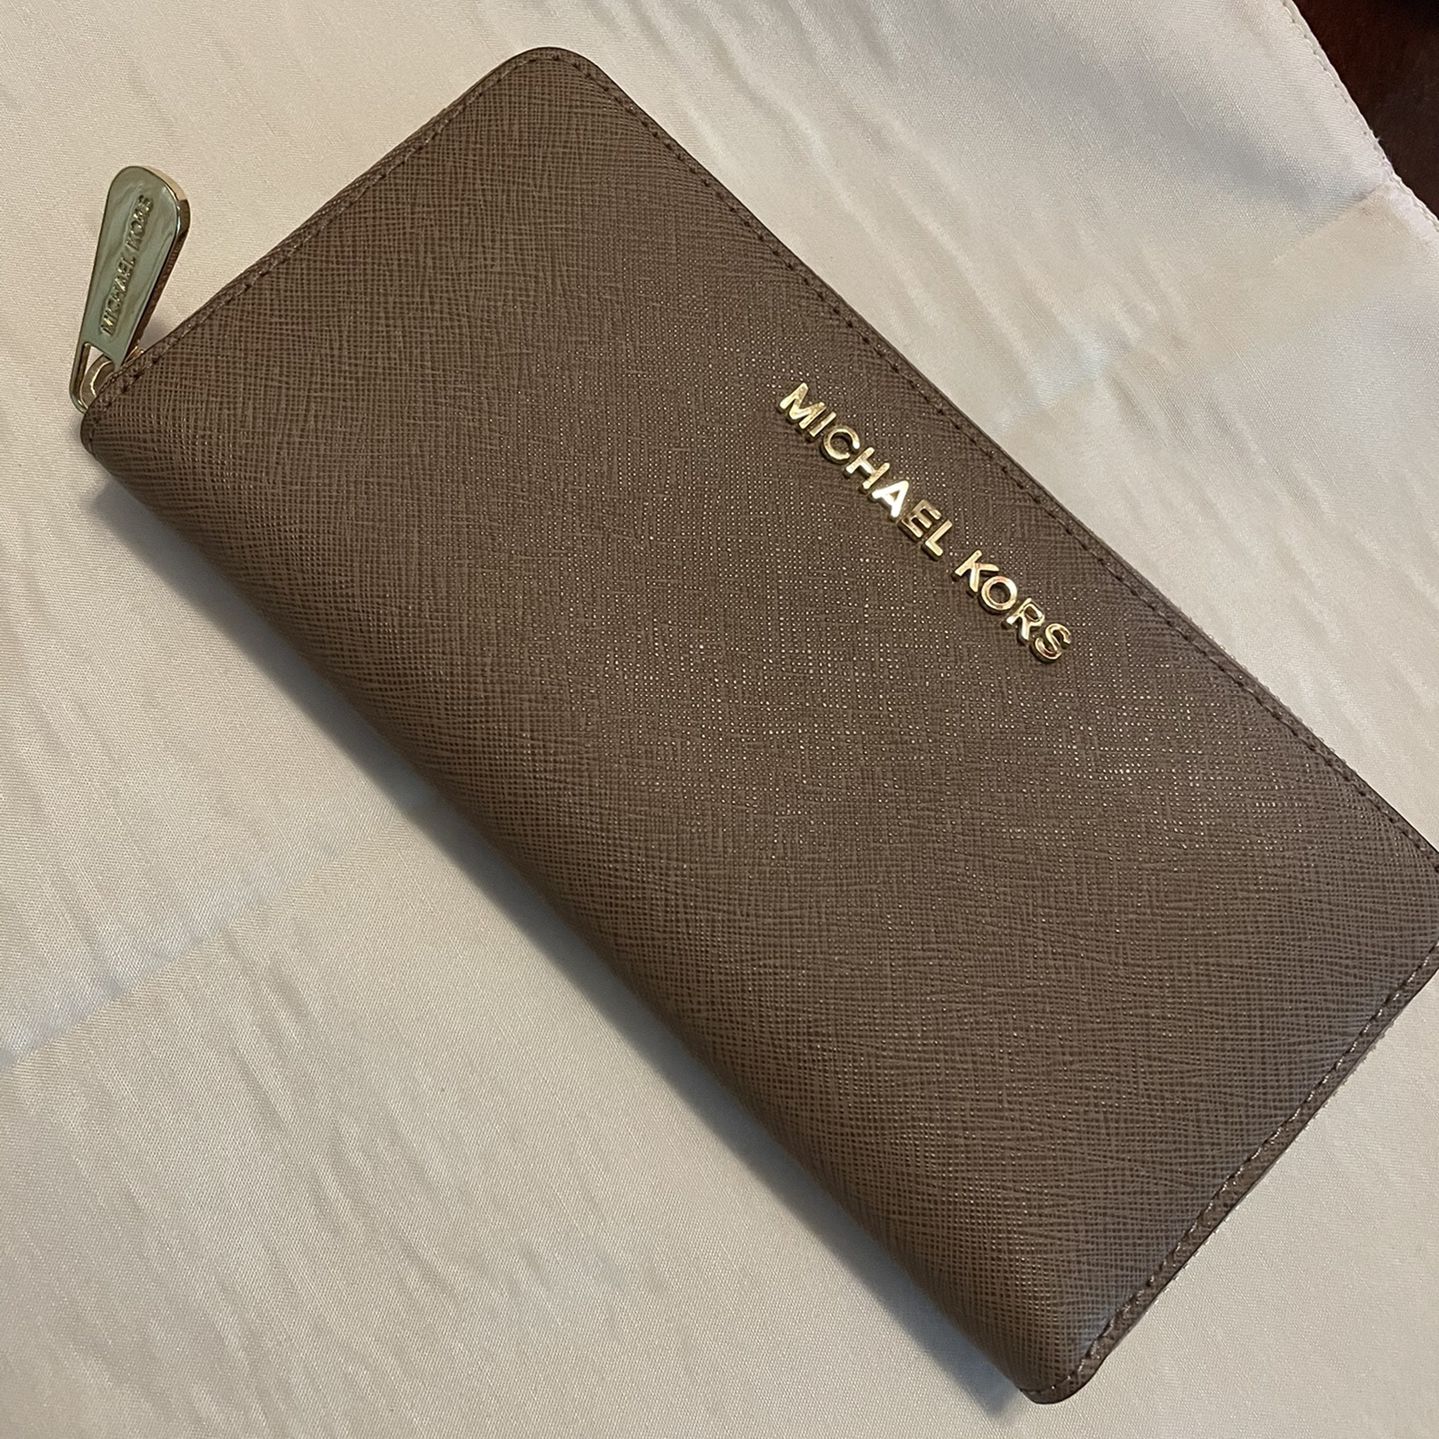 MICHAEL KORS CLUTCH/wallet for Sale in Philadelphia, PA - OfferUp